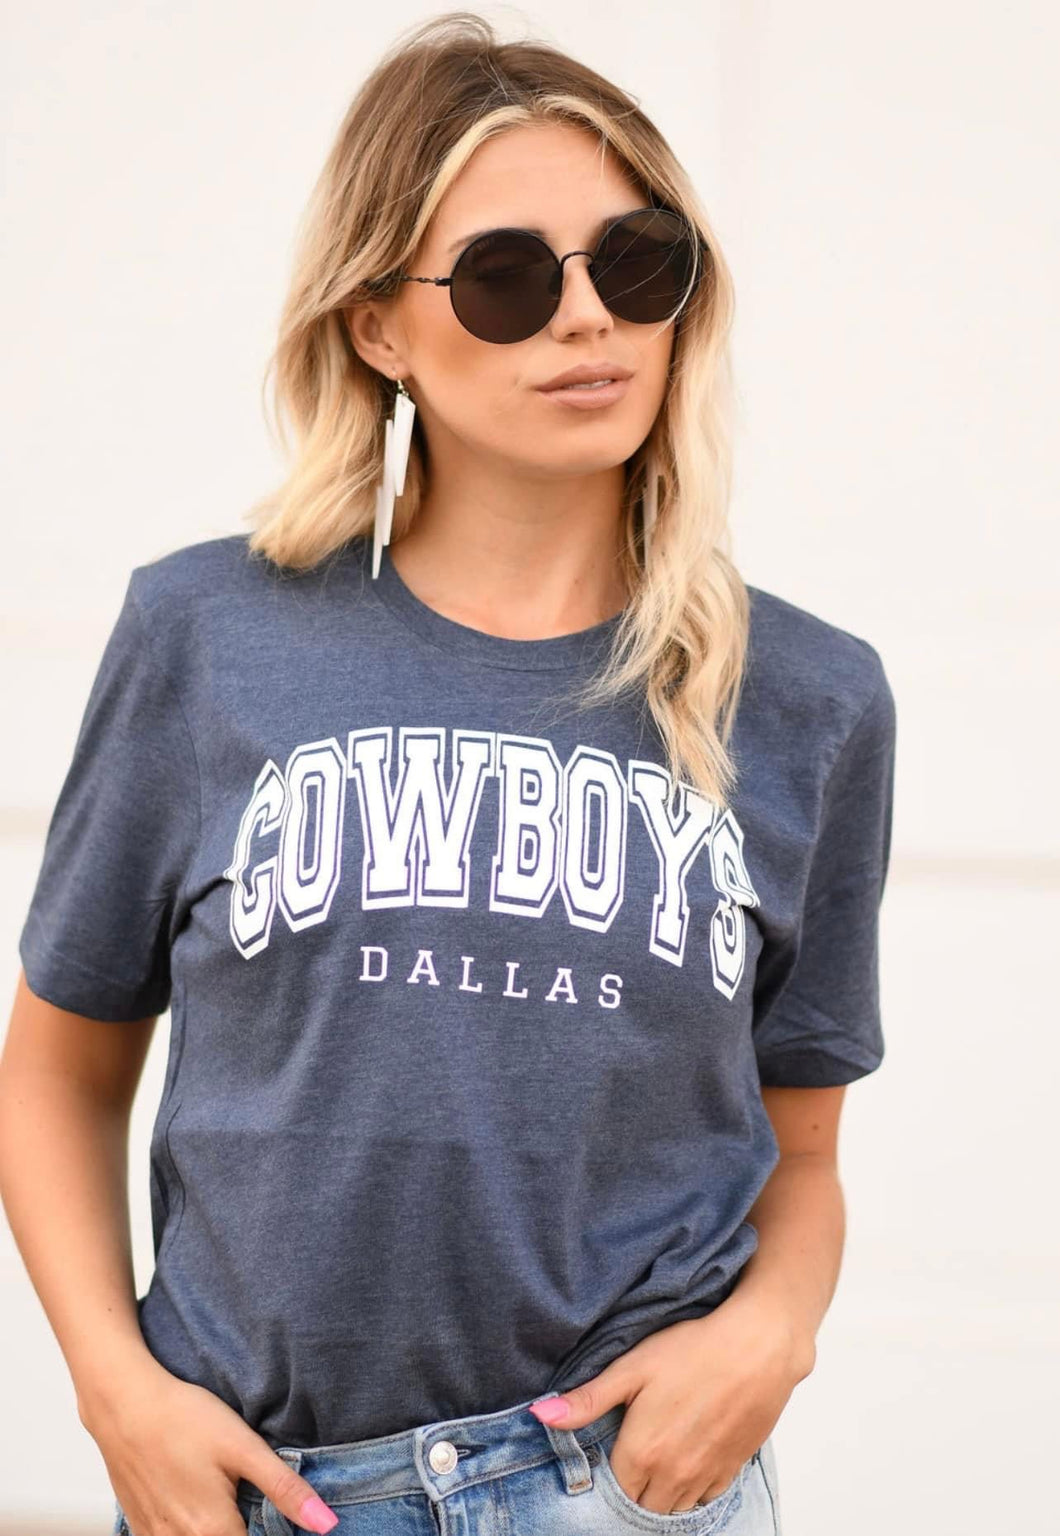 Cowboys Dallas Tee